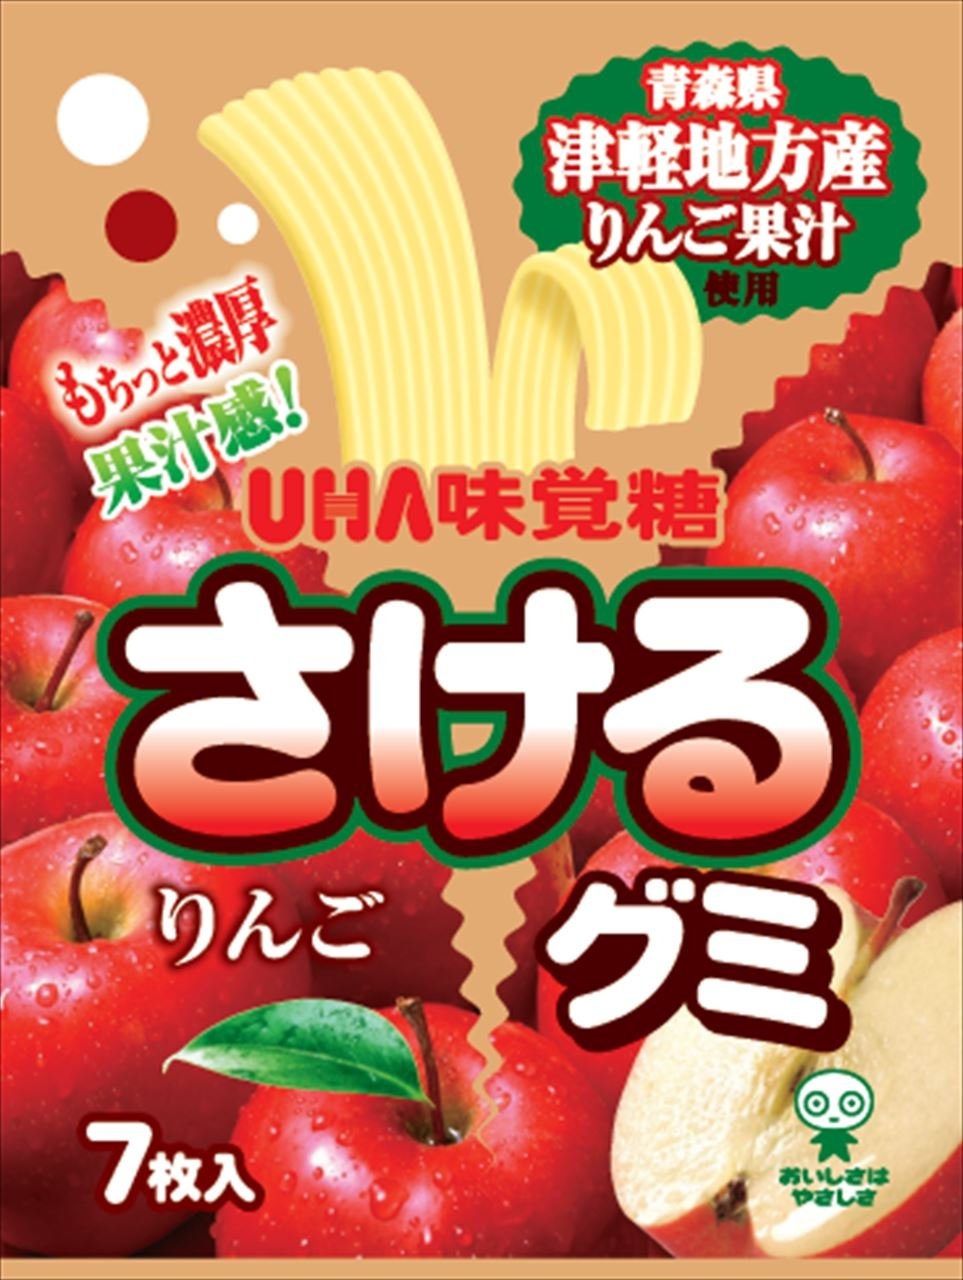 Fruchtgummi-Streifen - Apfel 32,9g